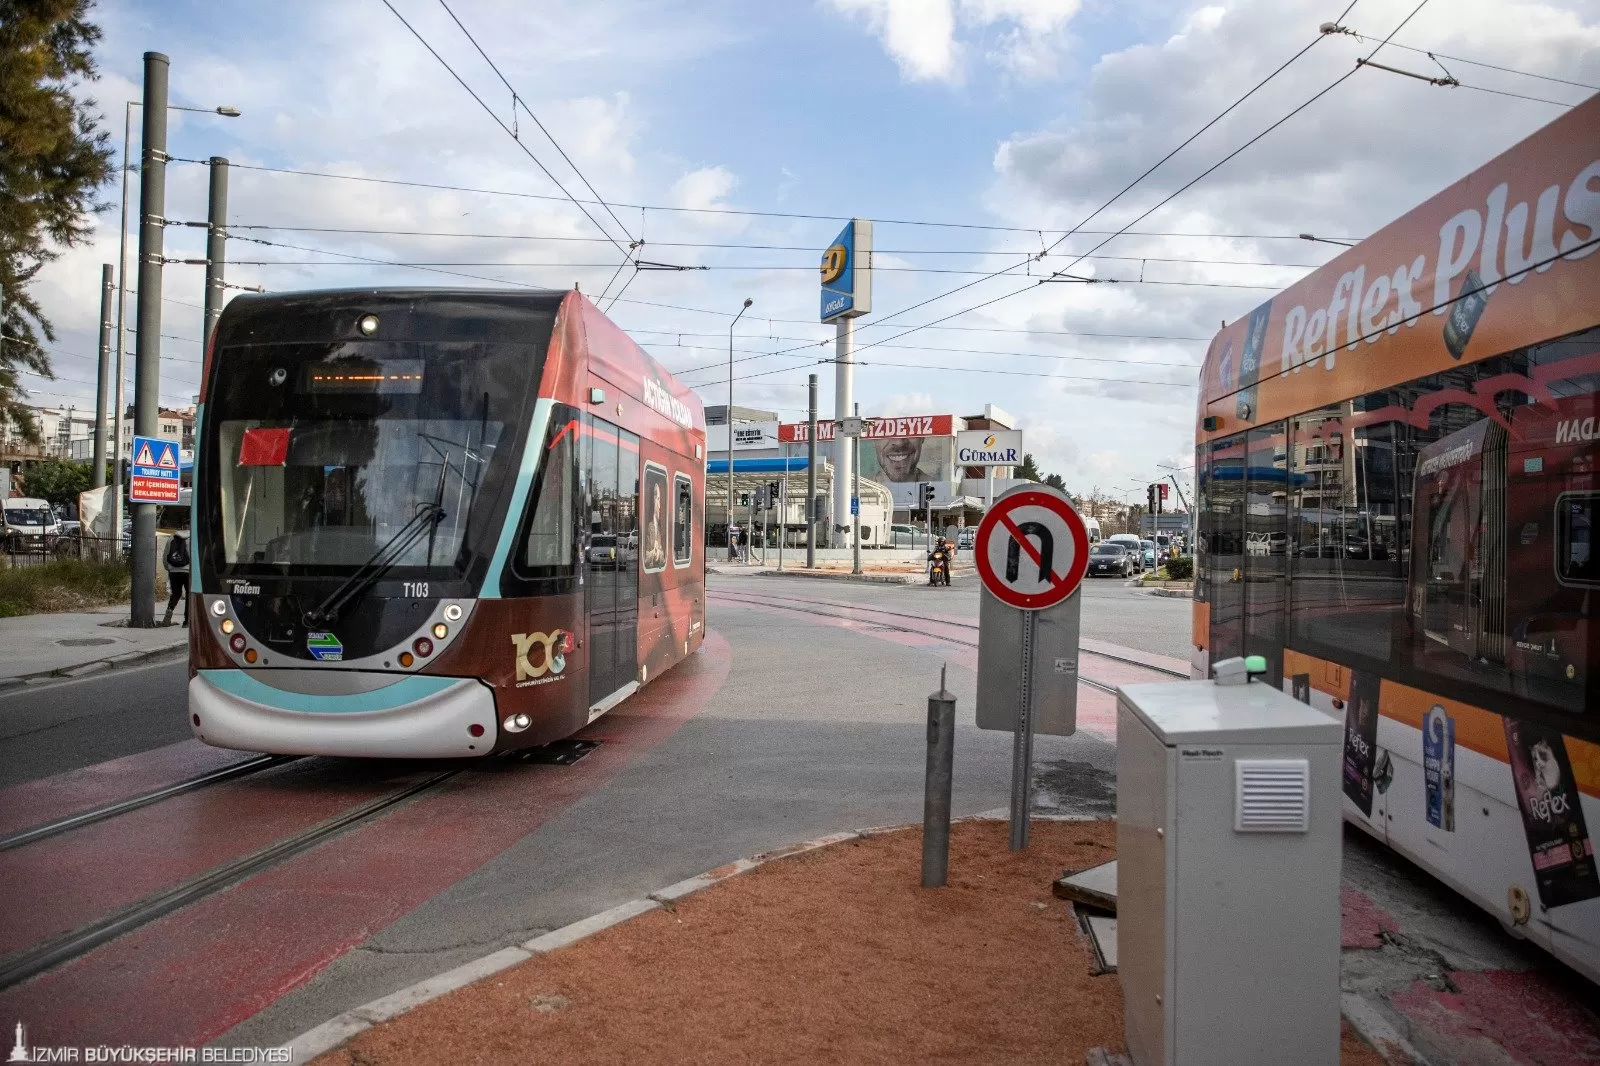 İzmir Büyükşehir Belediyesi'nin 3 yıl önce temelini attığı Çiğli Tramvayı, İzmirlilerden büyük ilgi gördü. 27 Ocak'ta hizmete açılan tramvay, günde 31 bin 660 yolcu taşıyor.